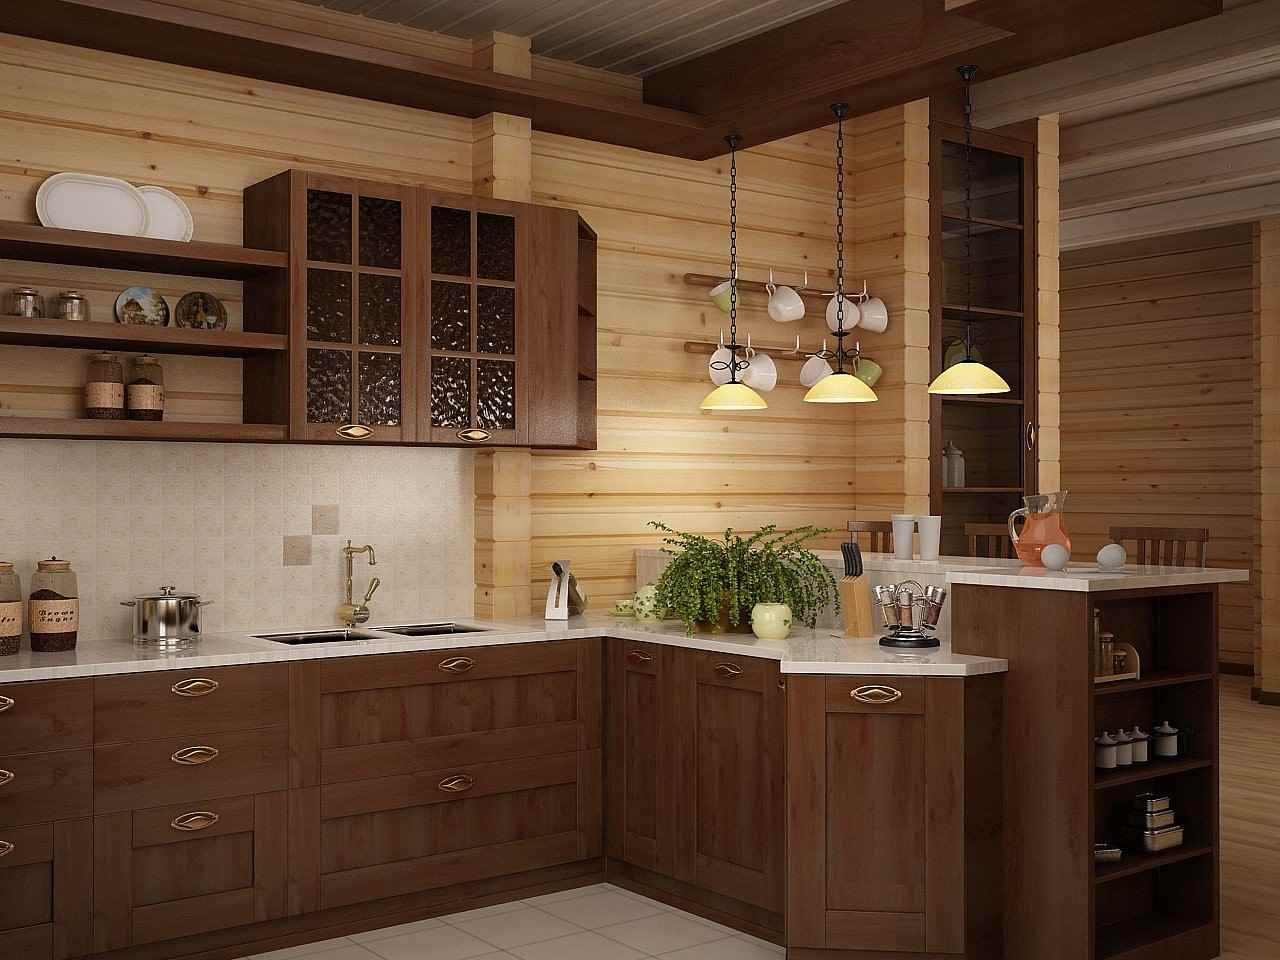 ideja lijepog uređenja kuhinje u drvenoj kući